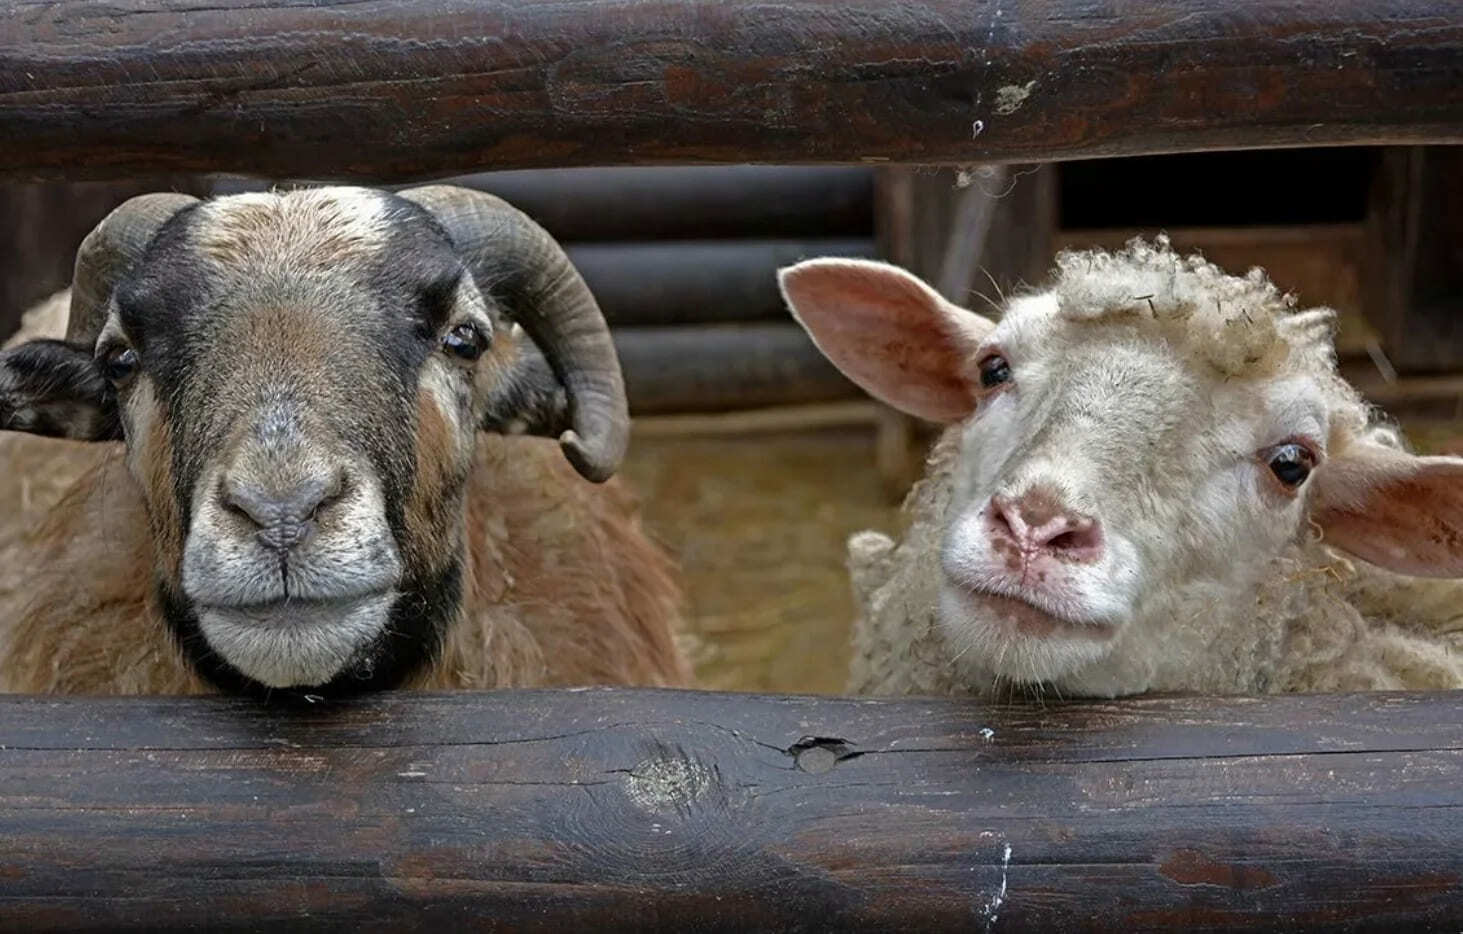 Интересные факты про овец - ТОП-10 фактов про баранов